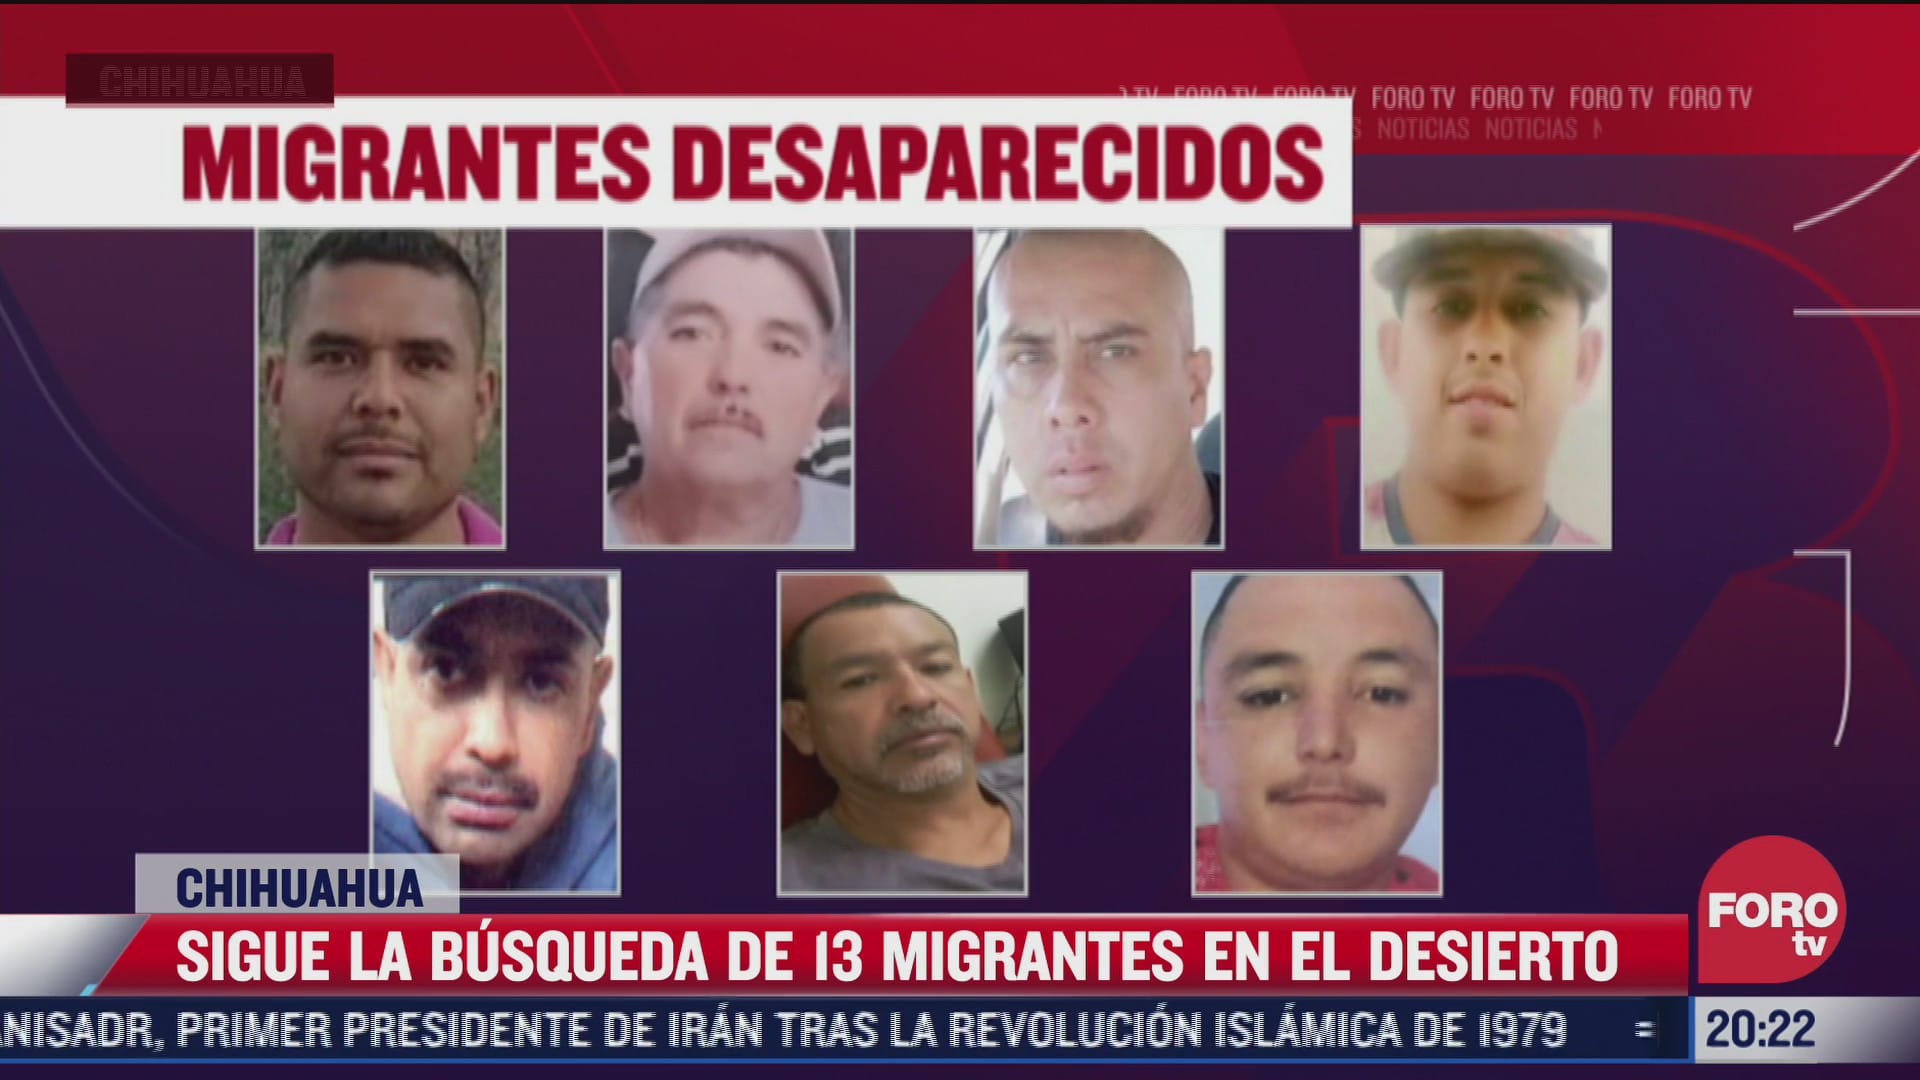 continua busqueda de 13 migrantes en desierto de chihuahua